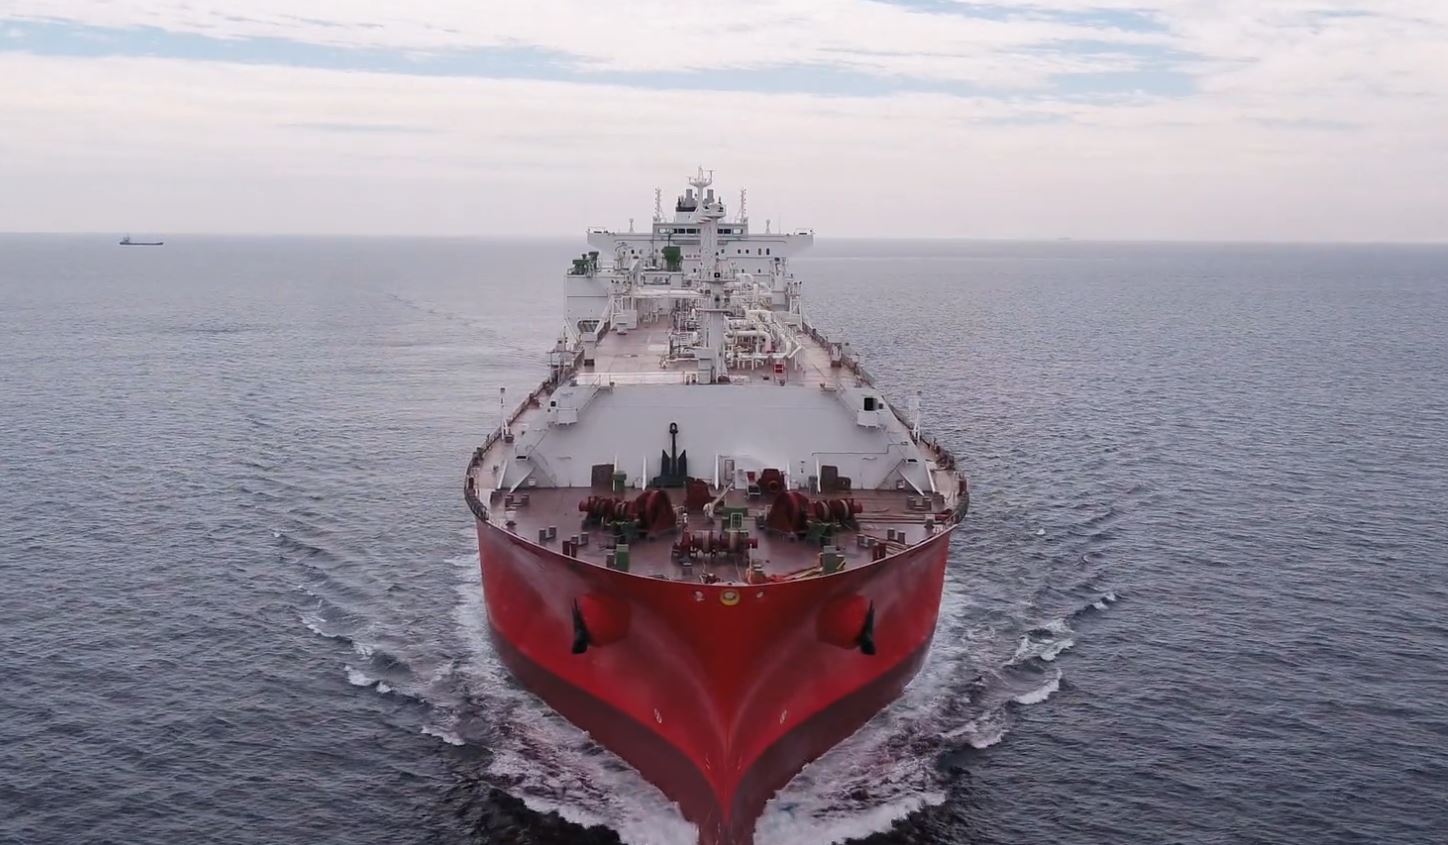 Denmark’s Celsius charters four LNG carriers to Gunvor’s unit